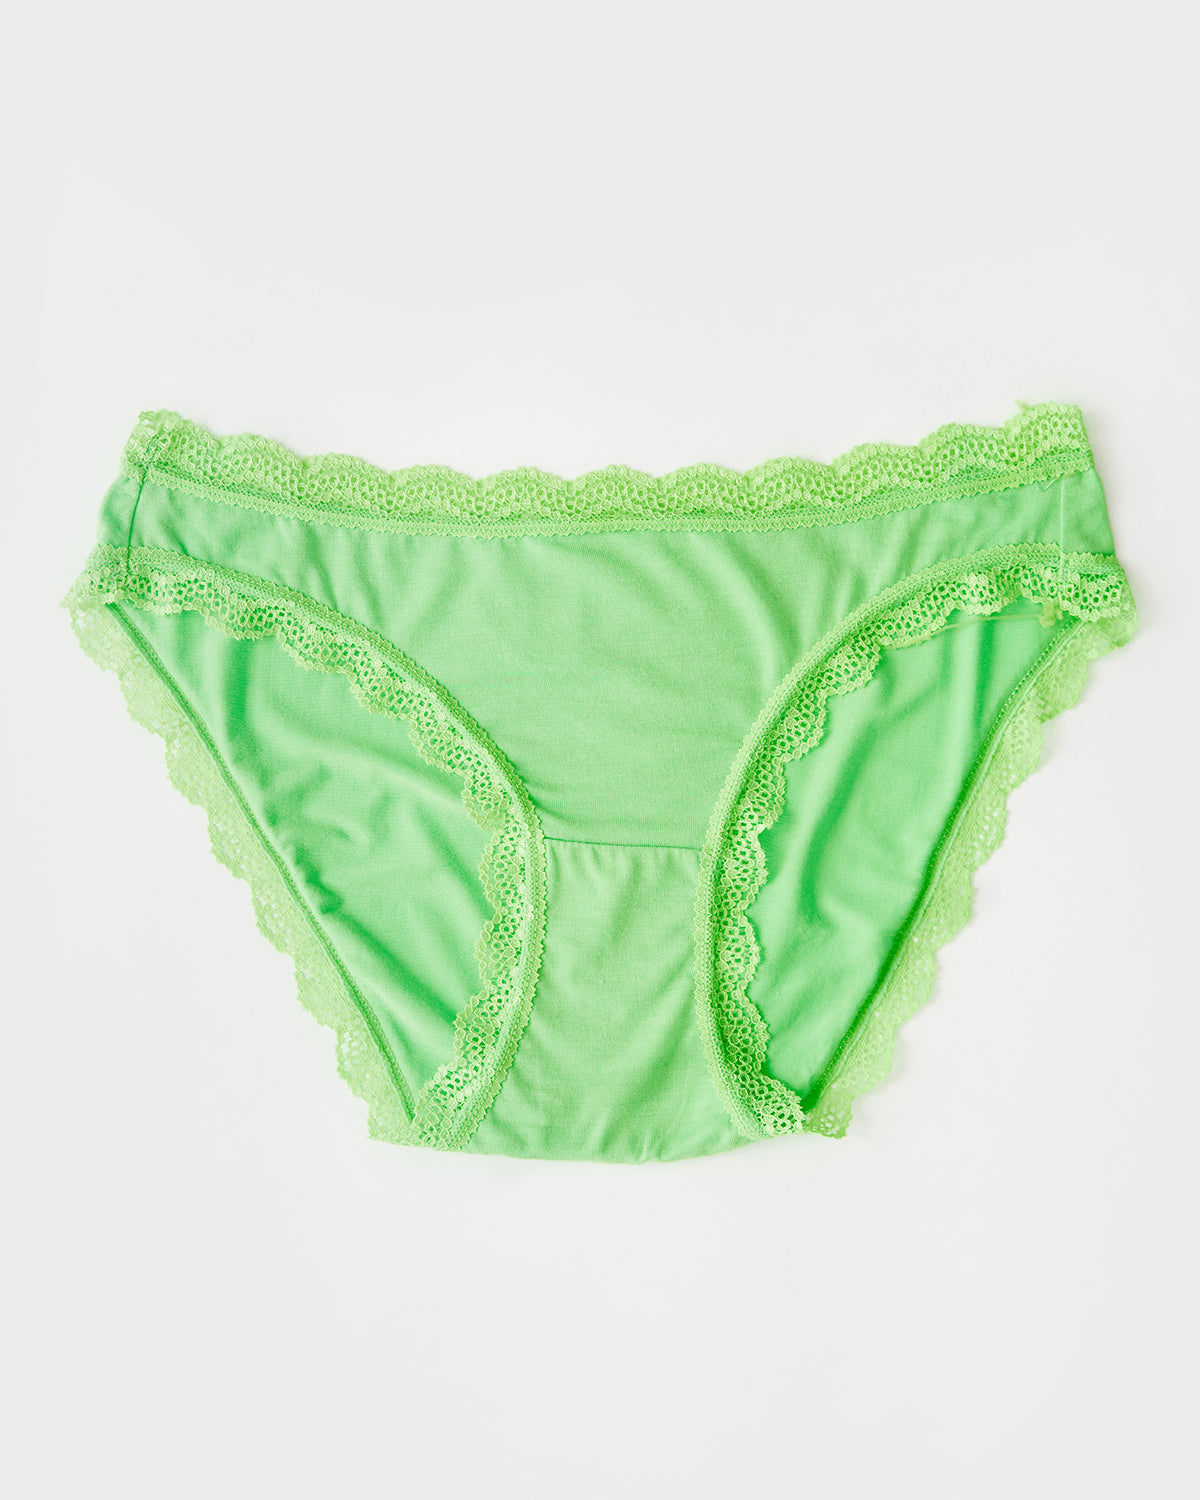 New American Girl of the Year Lea's Meet/Original Lime Green  Underwear~Panties 